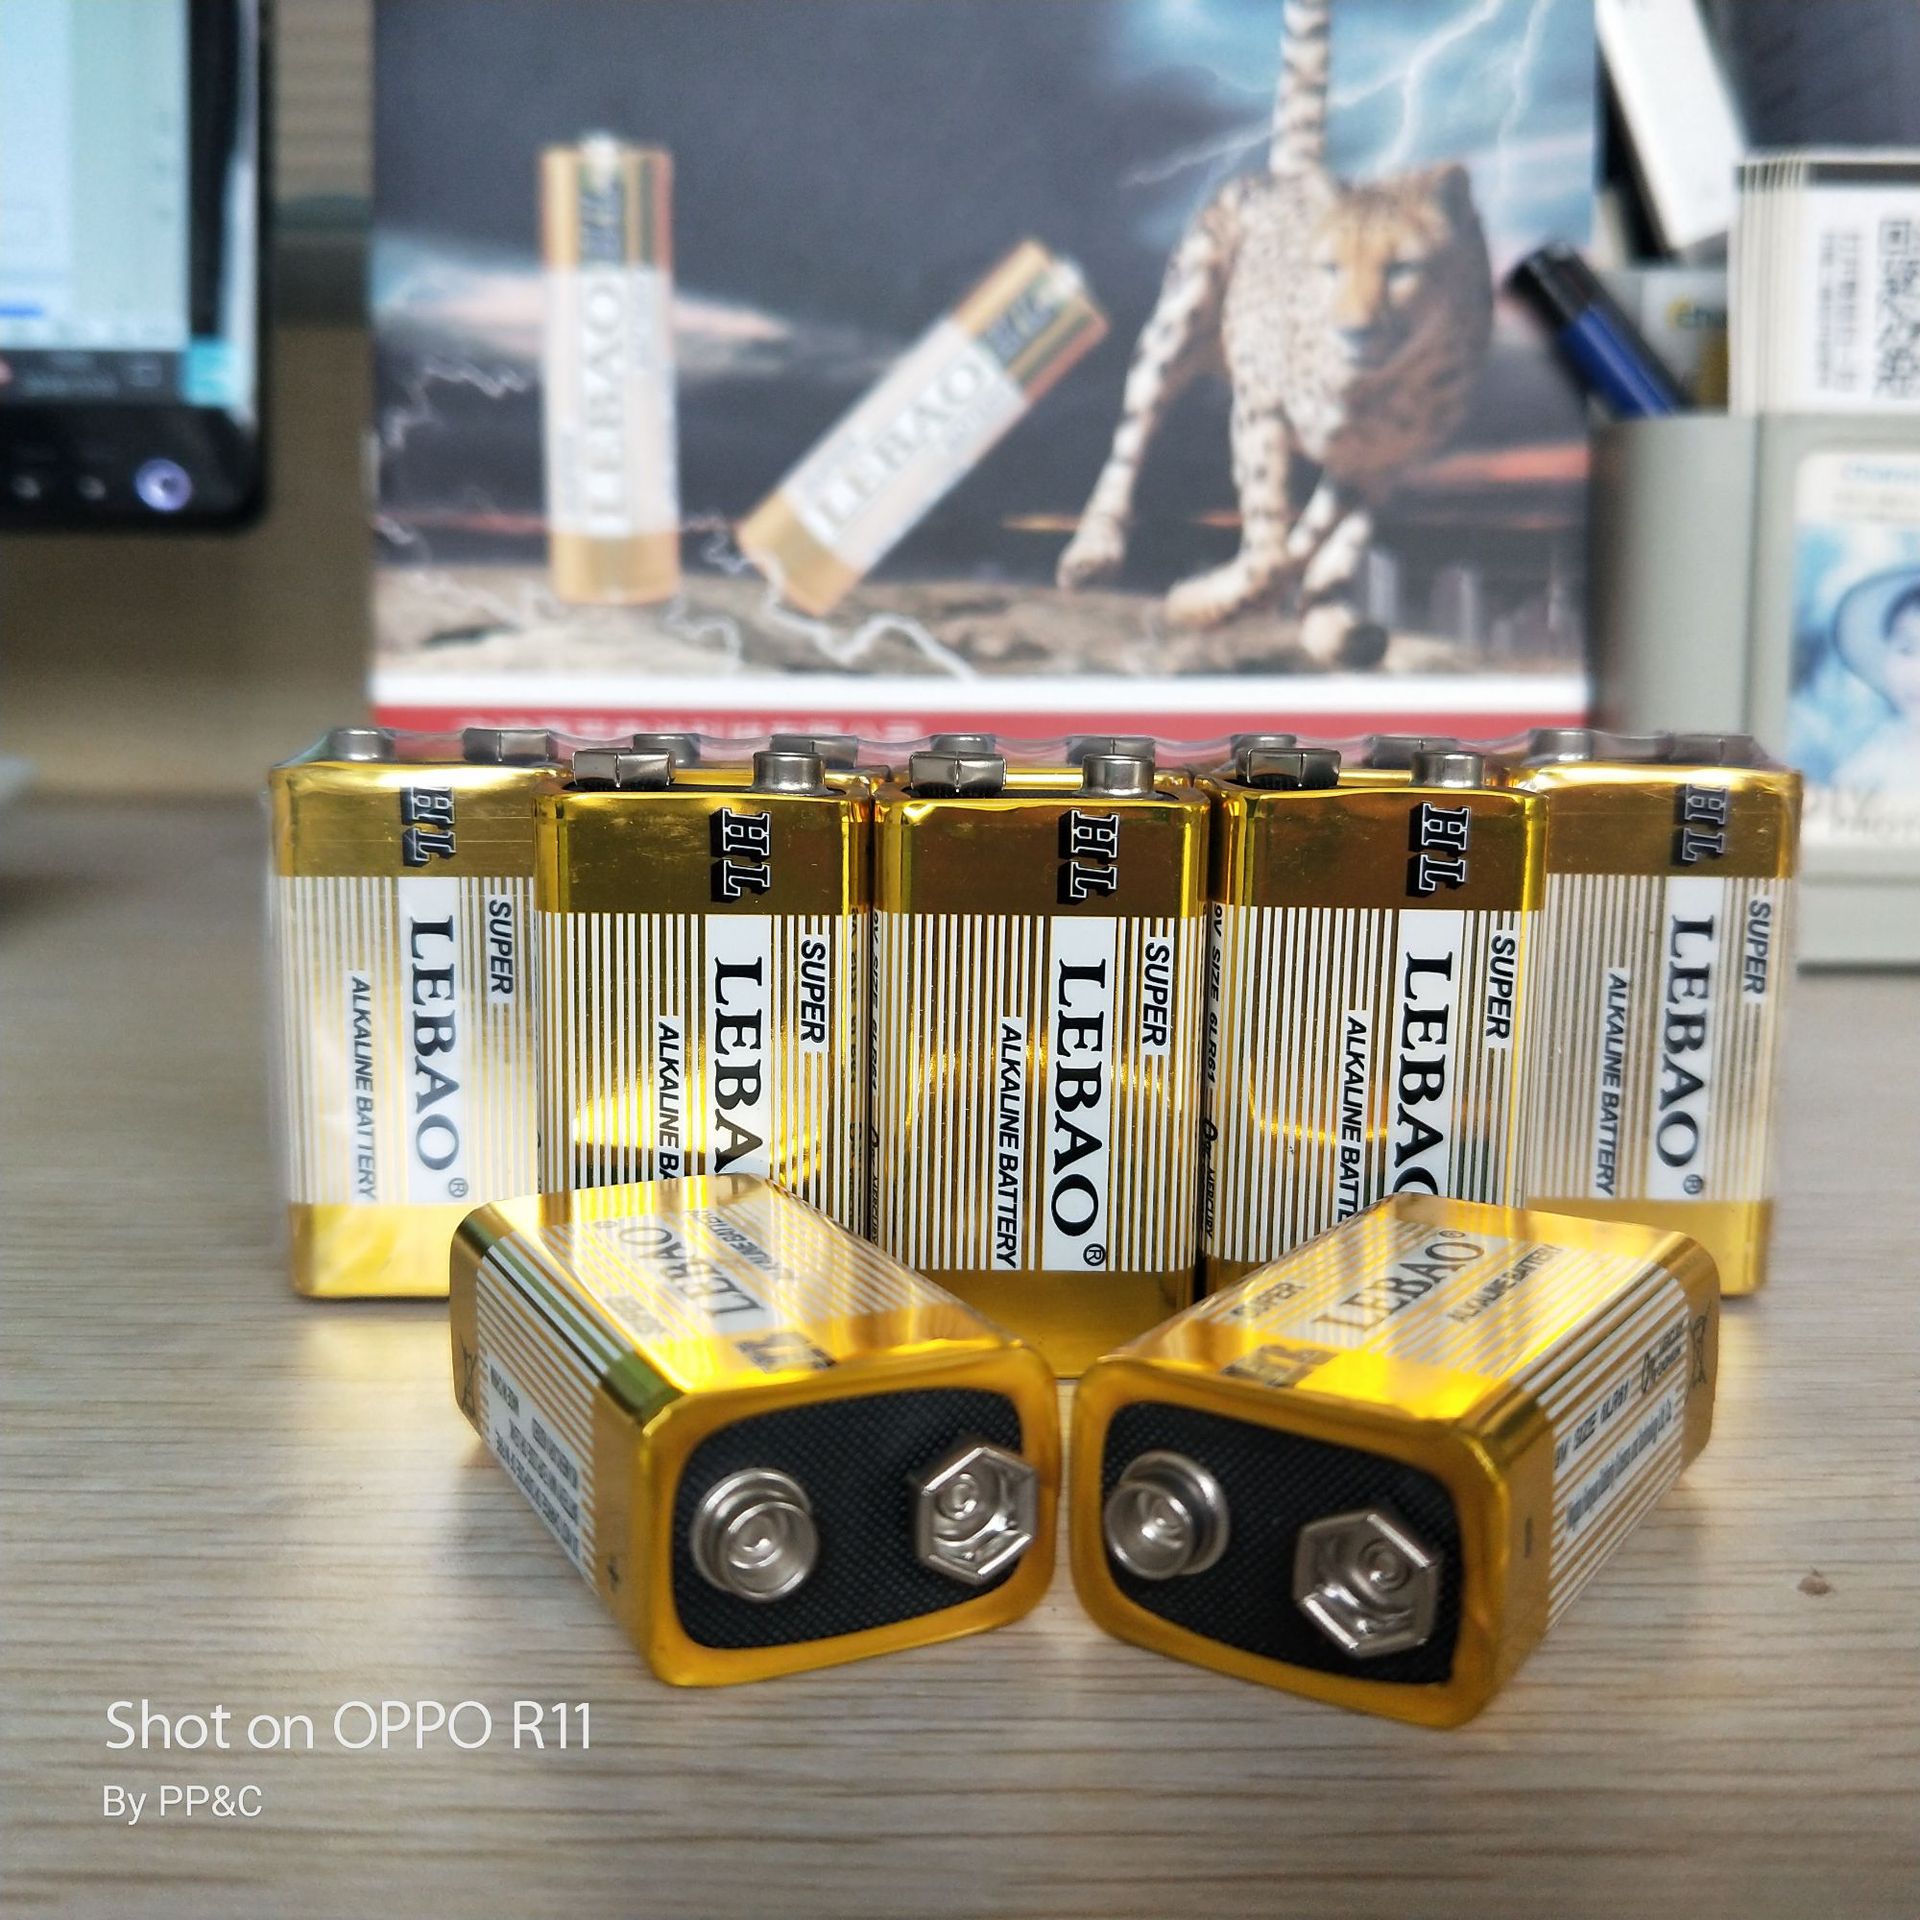 供应9V干电池 万用表环保耐用6LR61 LEBAO话筒专用9V碱性干电池 9V电池2